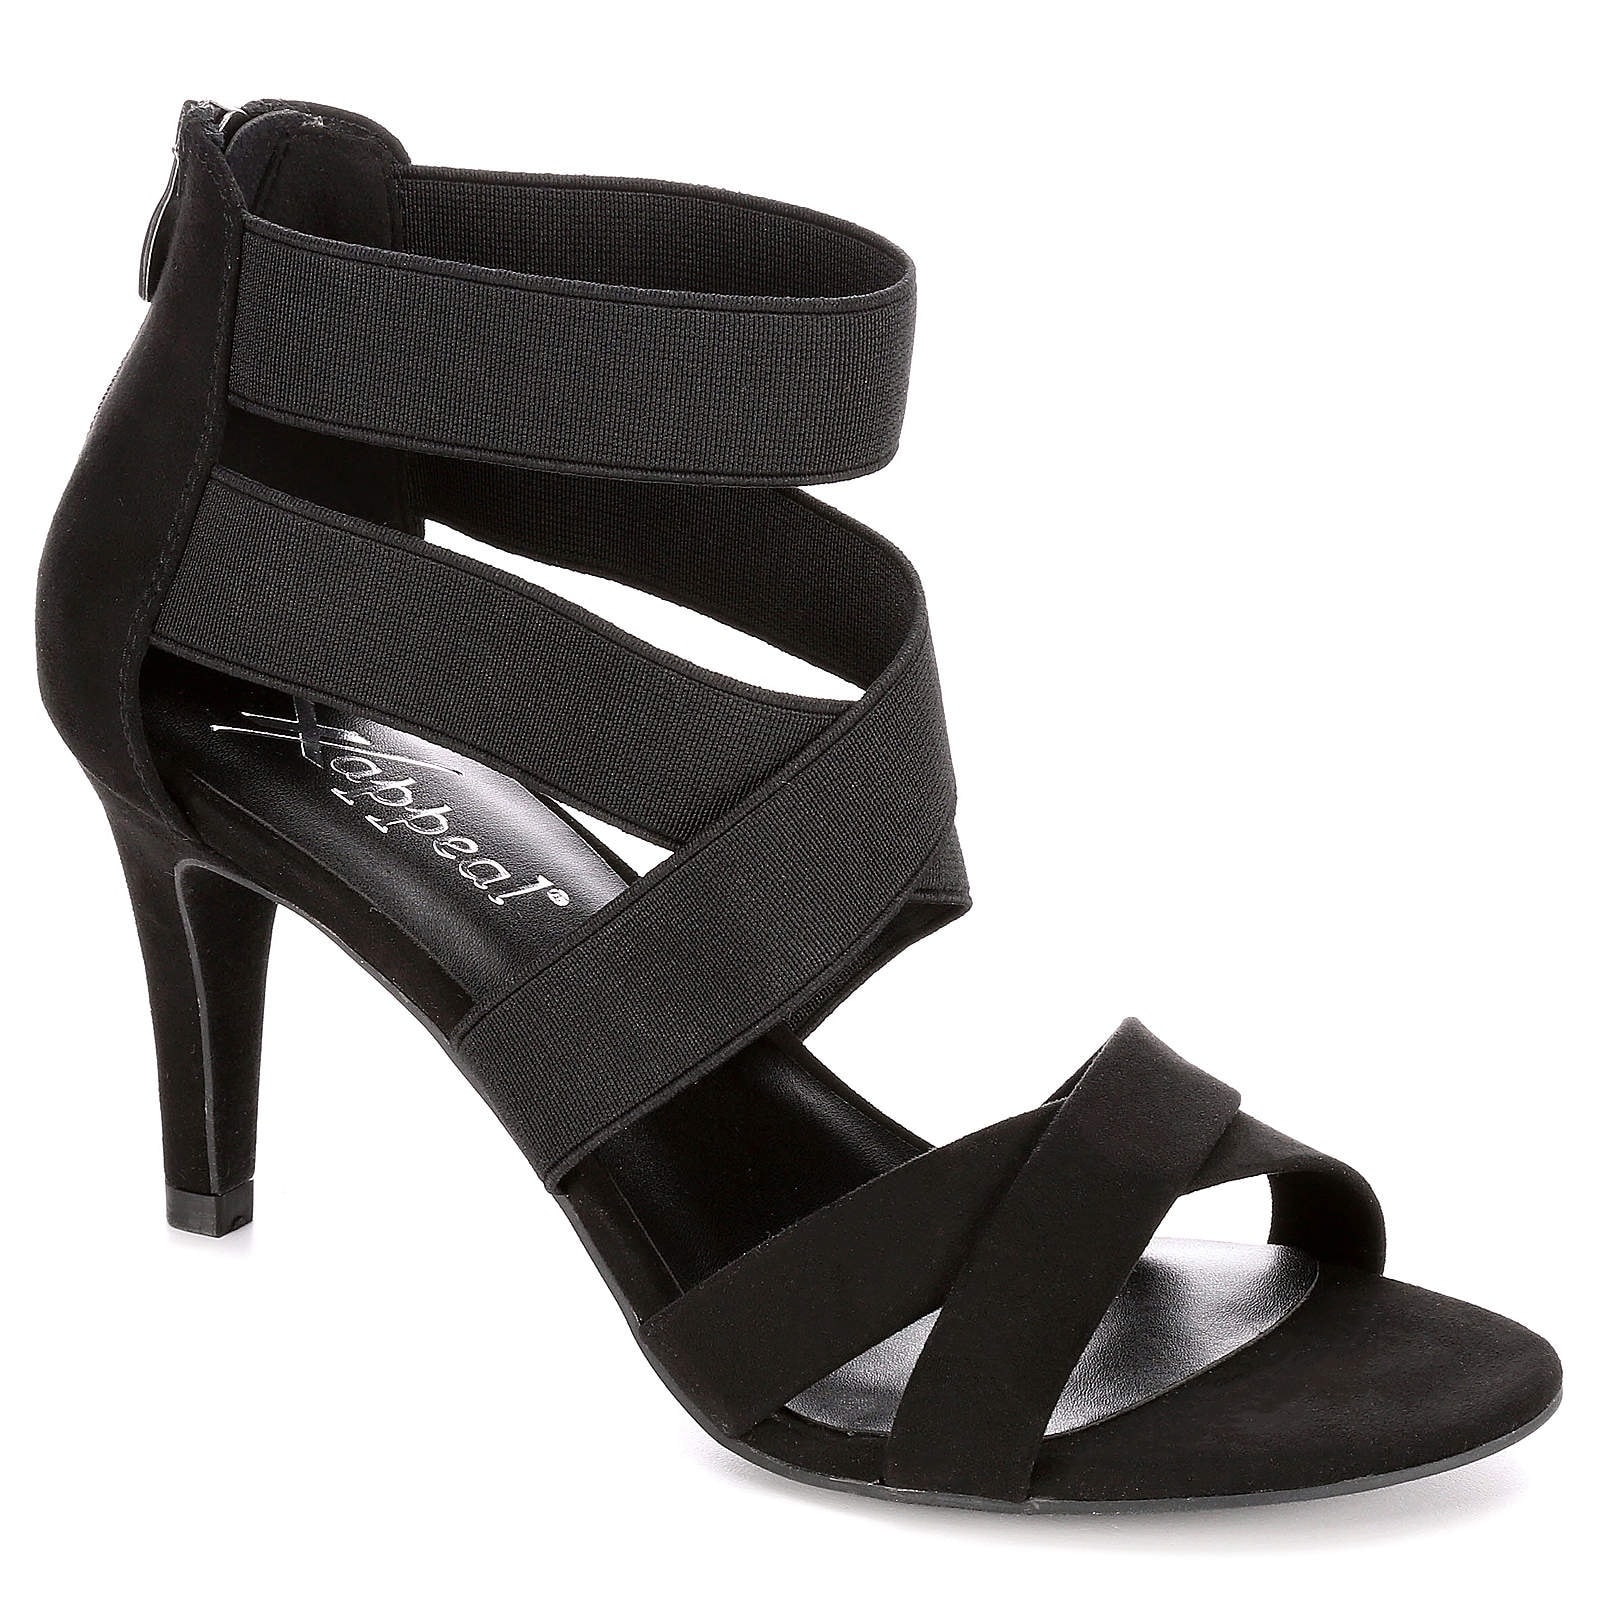 ladies black high heels